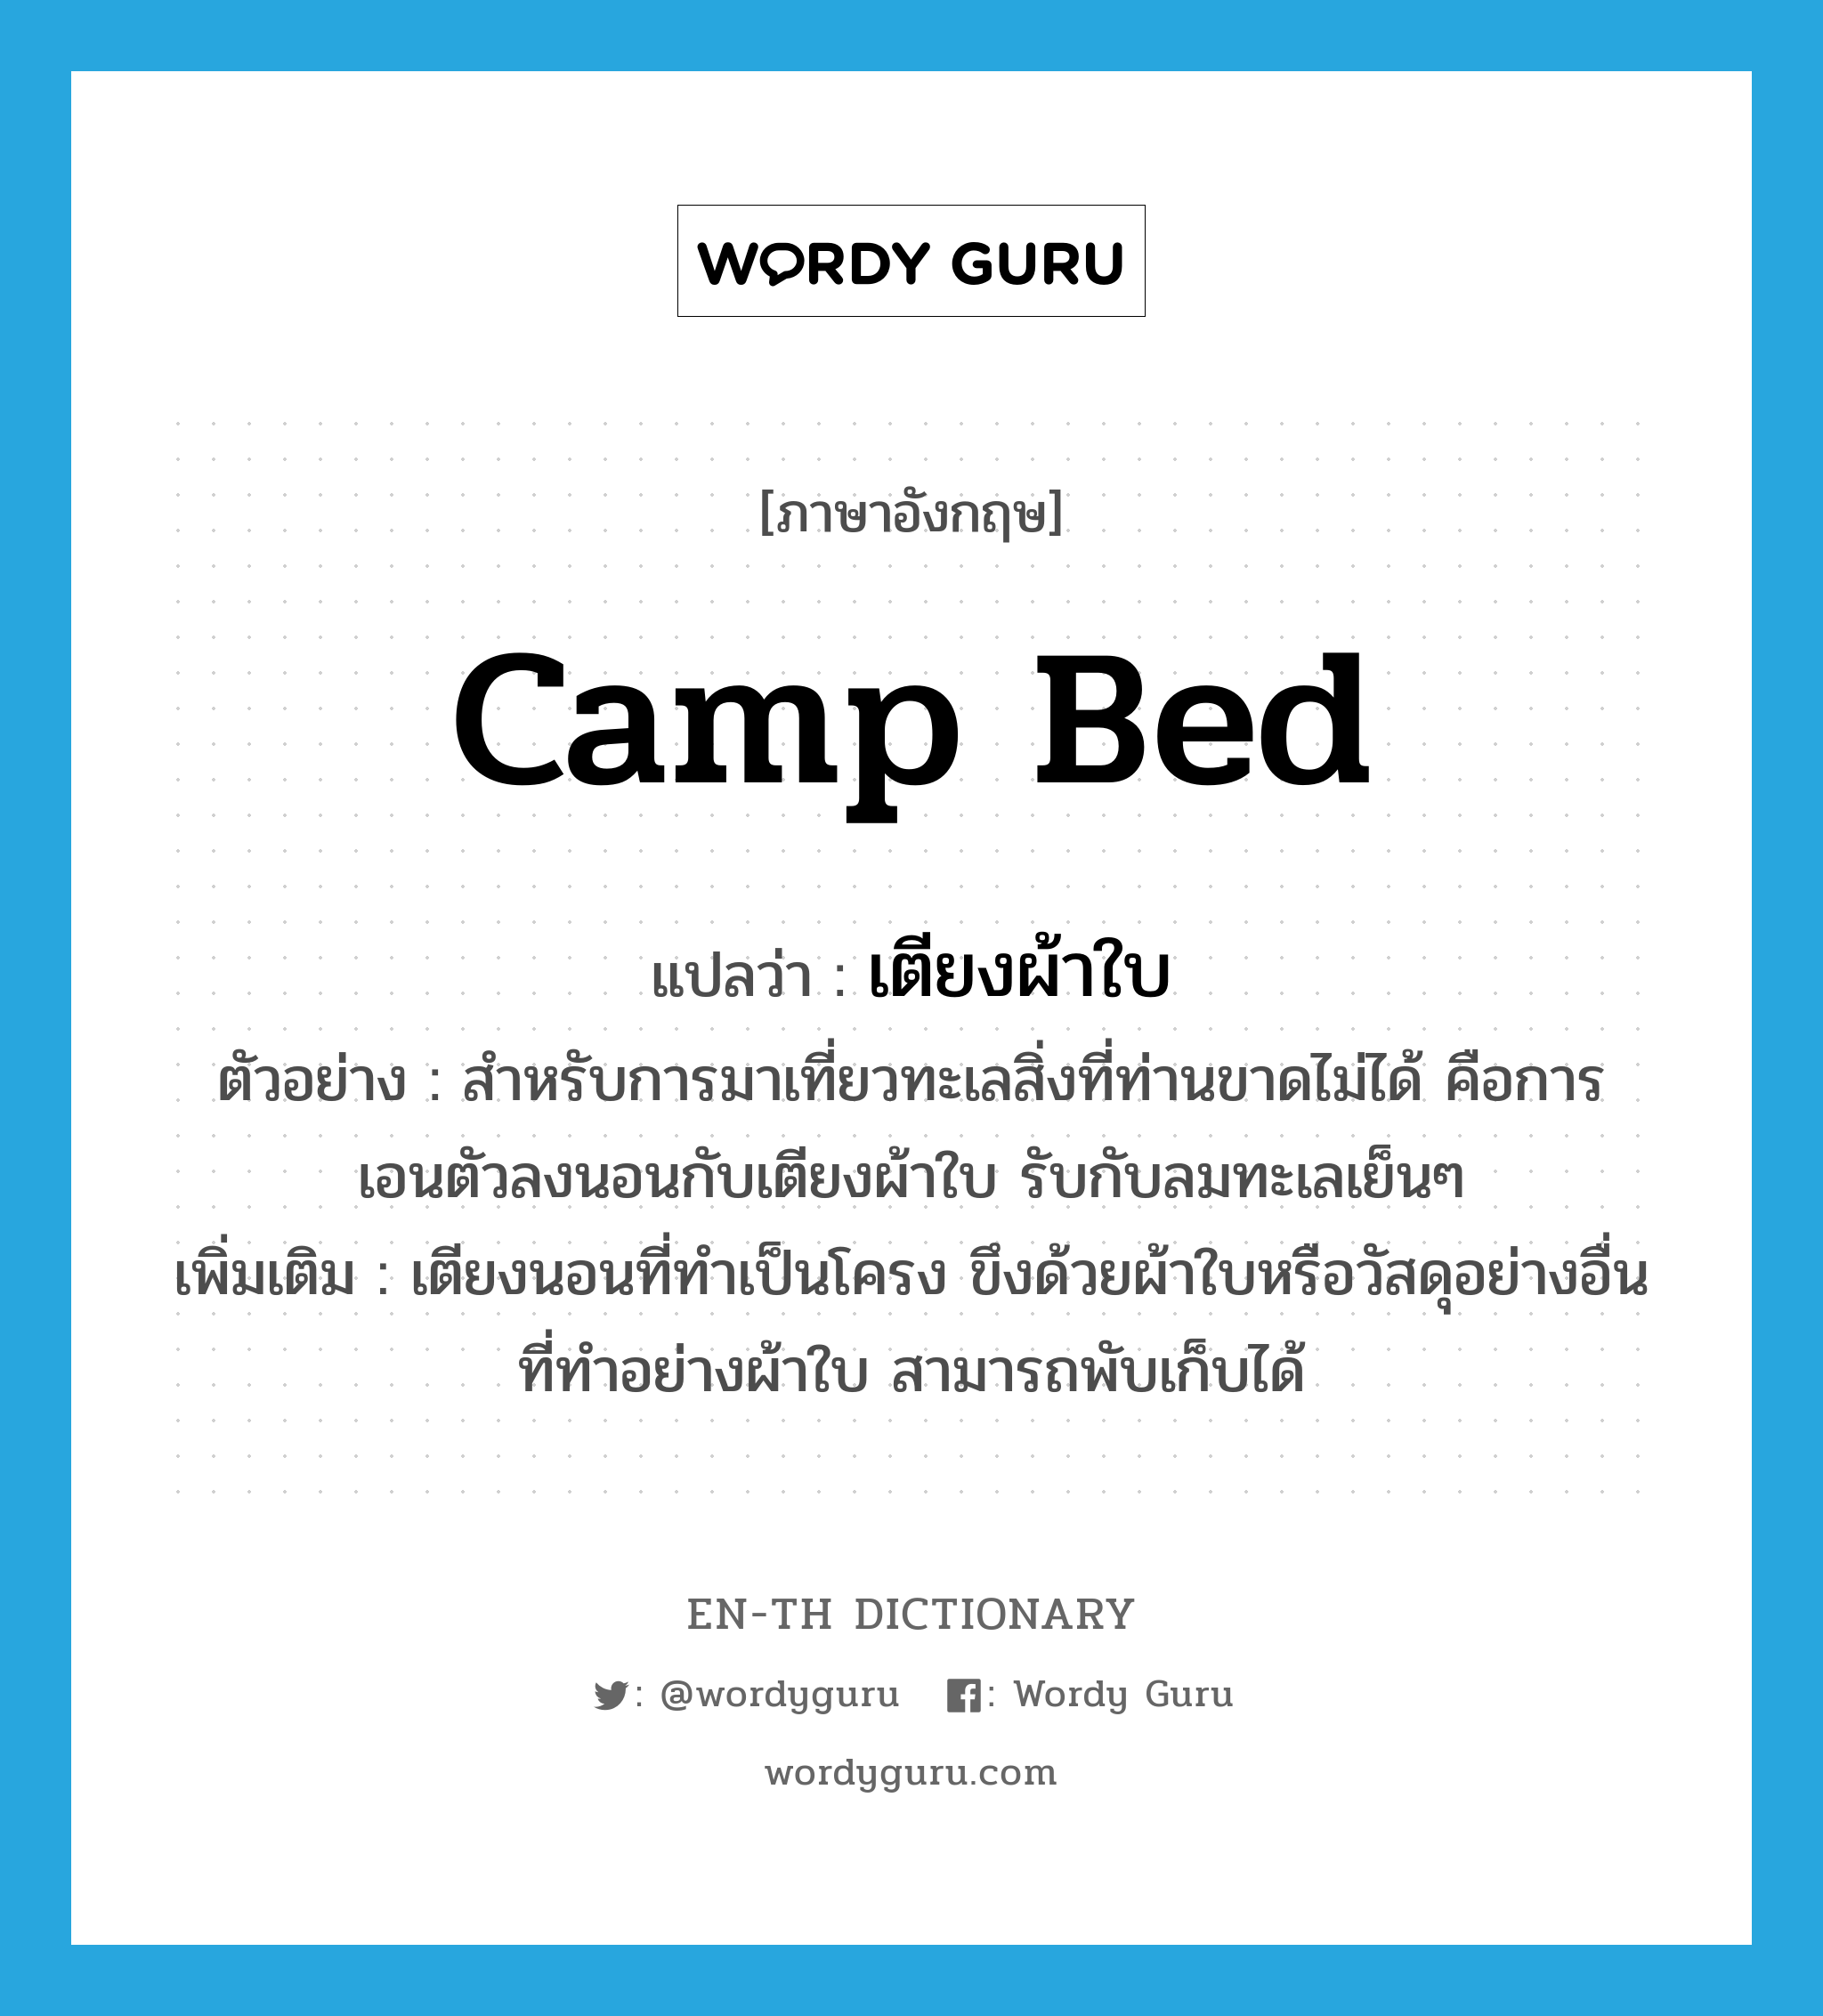 camp bed แปลว่า?, คำศัพท์ภาษาอังกฤษ camp bed แปลว่า เตียงผ้าใบ ประเภท N ตัวอย่าง สำหรับการมาเที่ยวทะเลสิ่งที่ท่านขาดไม่ได้ คือการ เอนตัวลงนอนกับเตียงผ้าใบ รับกับลมทะเลเย็นๆ เพิ่มเติม เตียงนอนที่ทำเป็นโครง ขึงด้วยผ้าใบหรือวัสดุอย่างอื่นที่ทำอย่างผ้าใบ สามารถพับเก็บได้ หมวด N